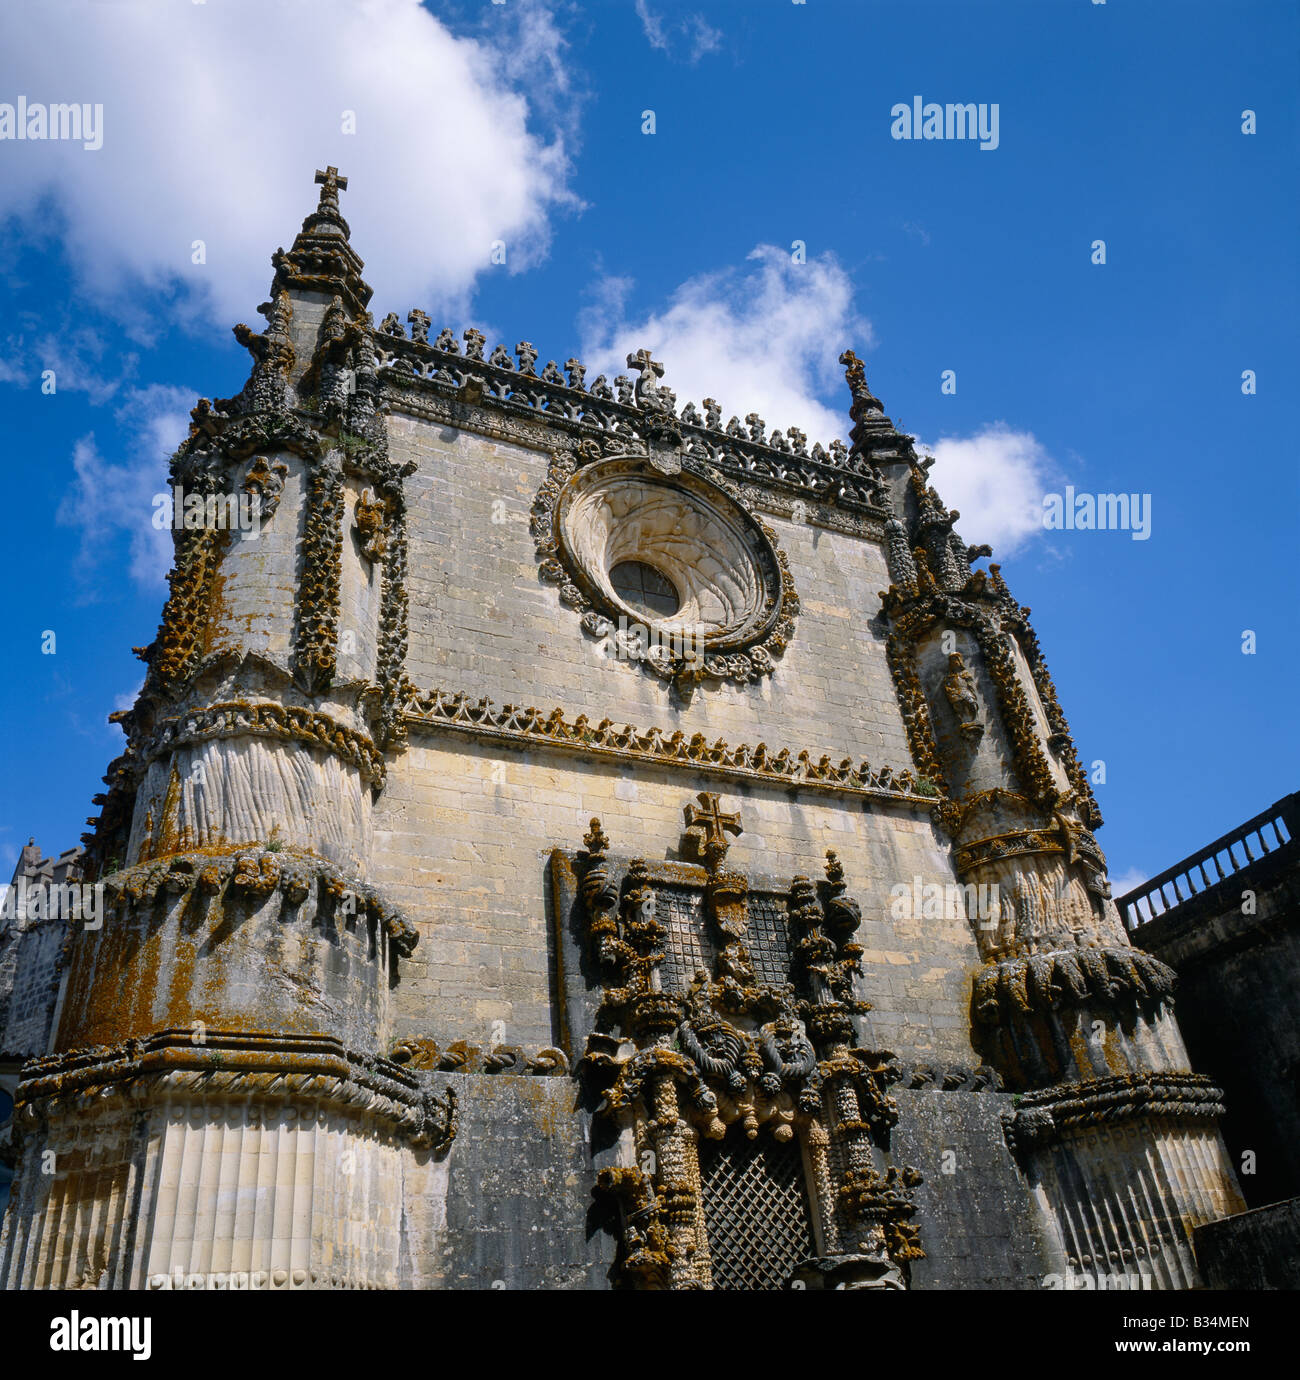 Europa meridionale del Portogallo Ribatejo Tomar Convento de Christo Capitolo facciata della casa Foto Stock